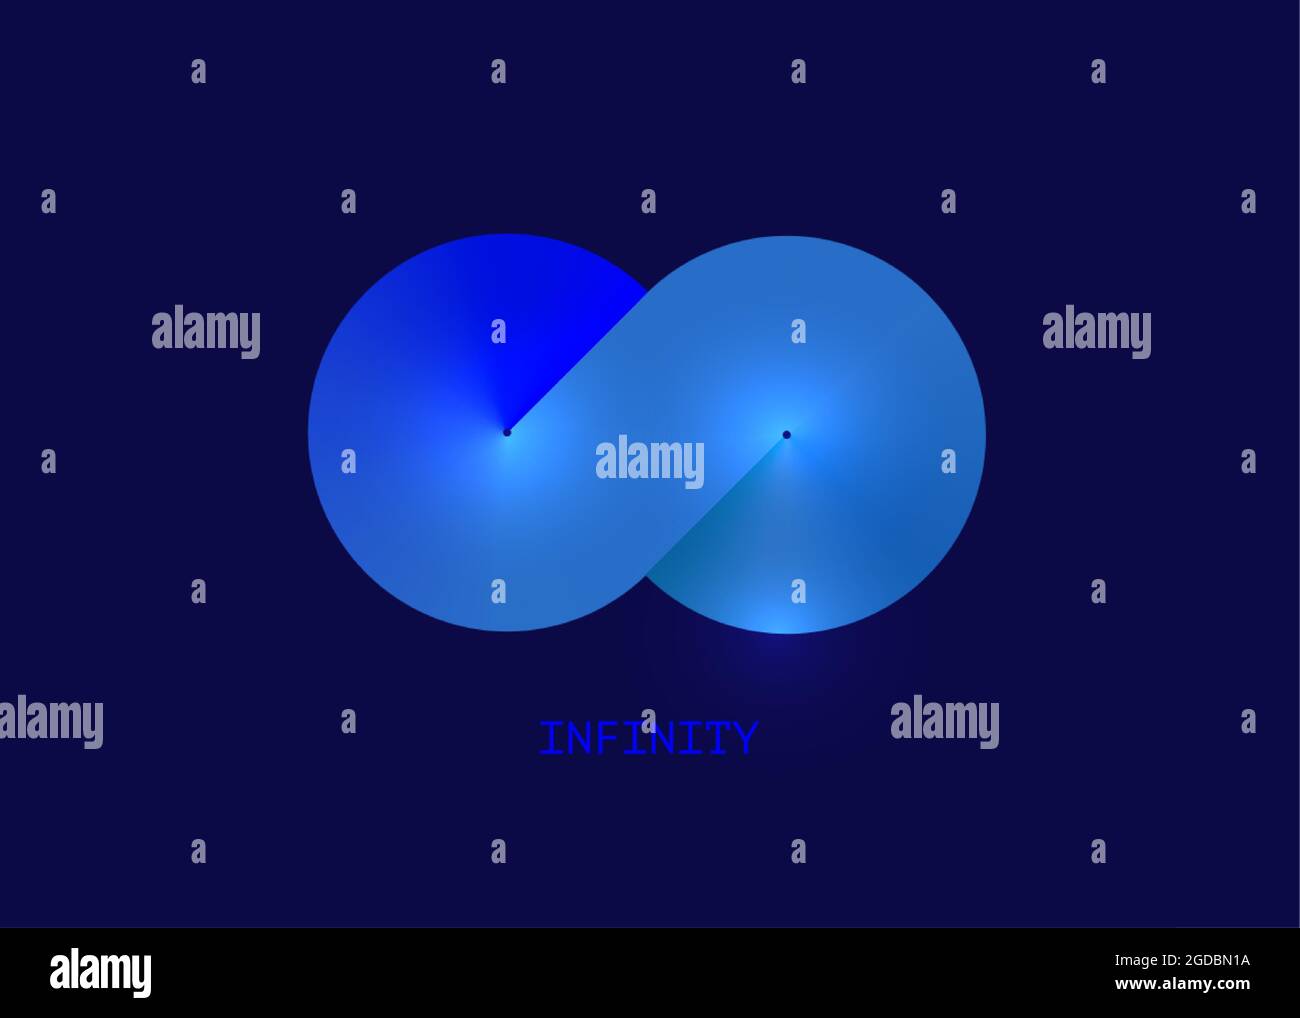 Modèle de logo commercial Infinity bleu pour votre conception. Eternity concept dégradé coloré Illustration vectorielle isolée sur fond bleu marine Illustration de Vecteur